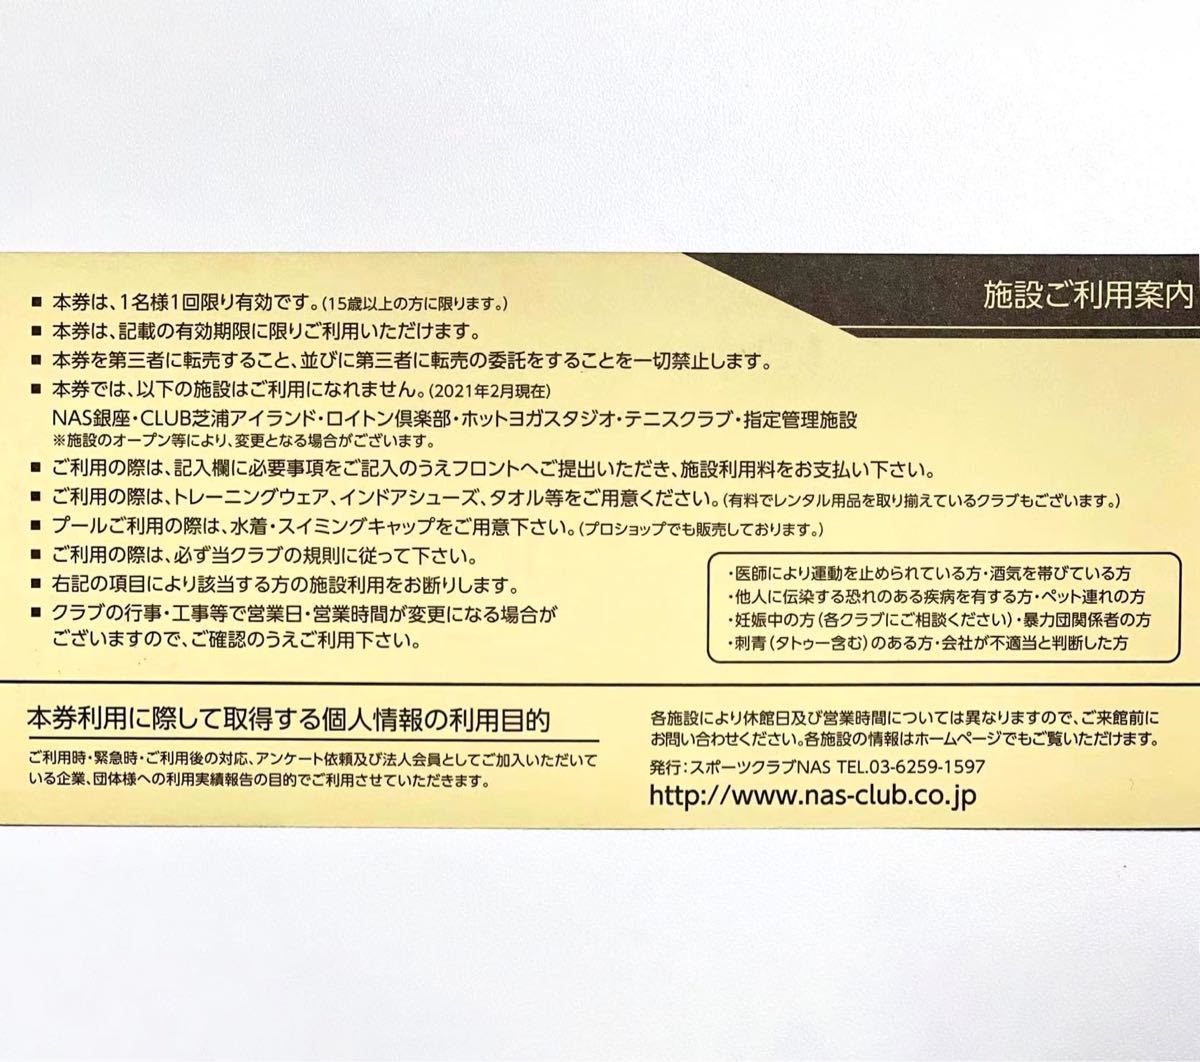 ☆来年5月末まで☆スポーツクラブNAS 10枚 施設利用券 | www.justice